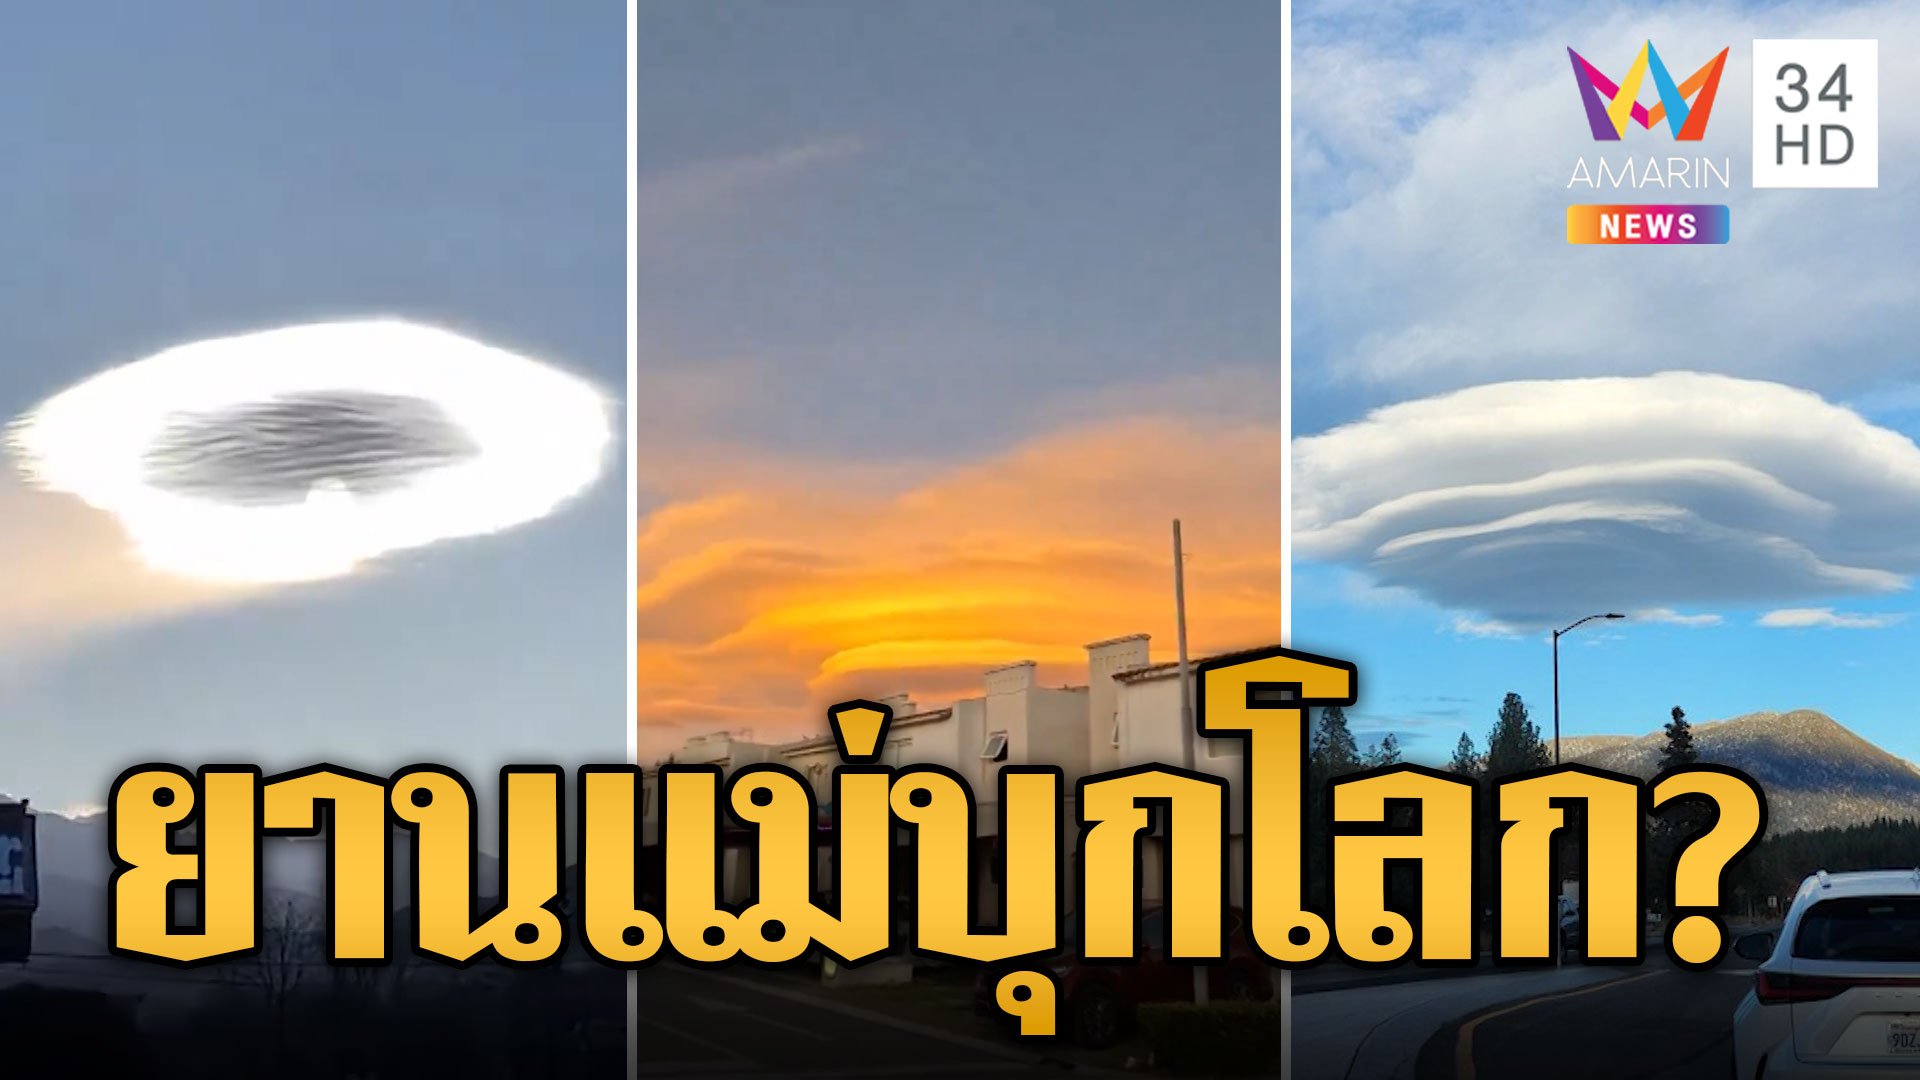 ฮือฮา เมฆประหลาด คล้ายจานบิน UFO บุกโลก | ข่าวอรุณอมรินทร์ | 12 ม.ค. 67 | AMARIN TVHD34